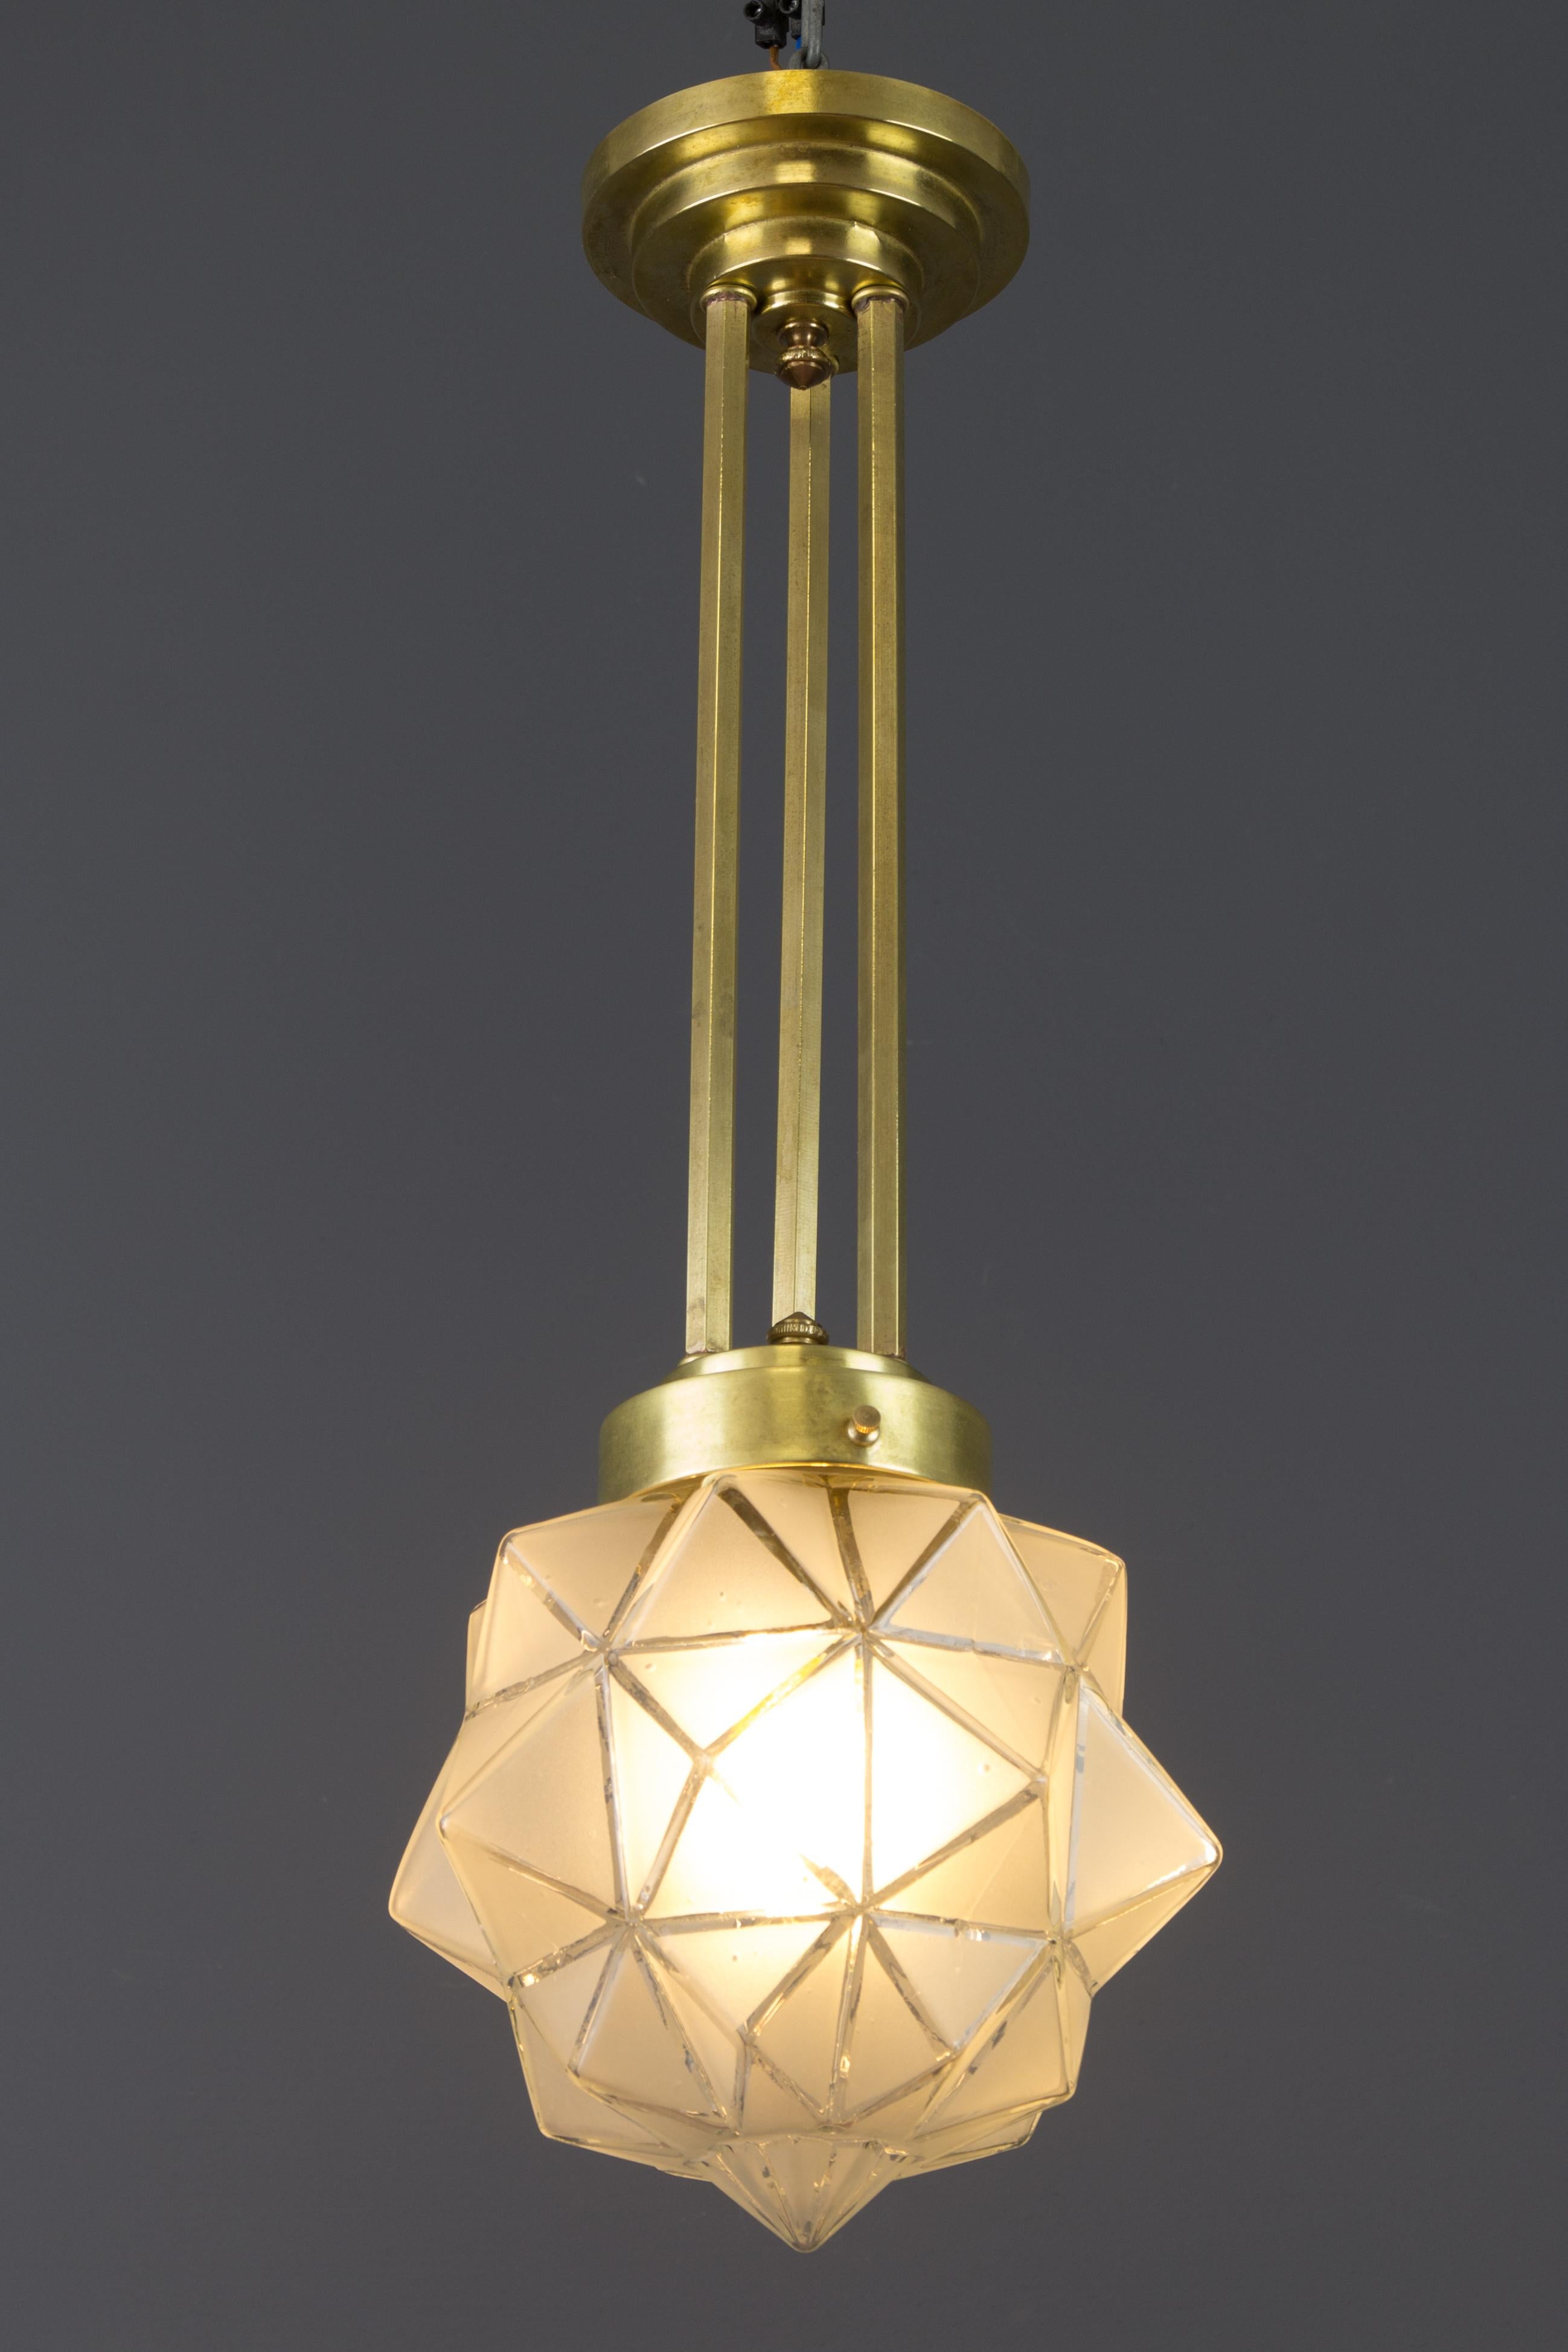 Elegante Art-Déco-Hängeleuchte aus Messing mit wunderschön geometrischem, polygonalem Milchglasschirm. Hergestellt in Frankreich, in den 1930er Jahren.
Eine Fassung für eine Glühbirne der Größe B22.
Abmessungen: Höhe 52 cm; Durchmesser 19 cm.